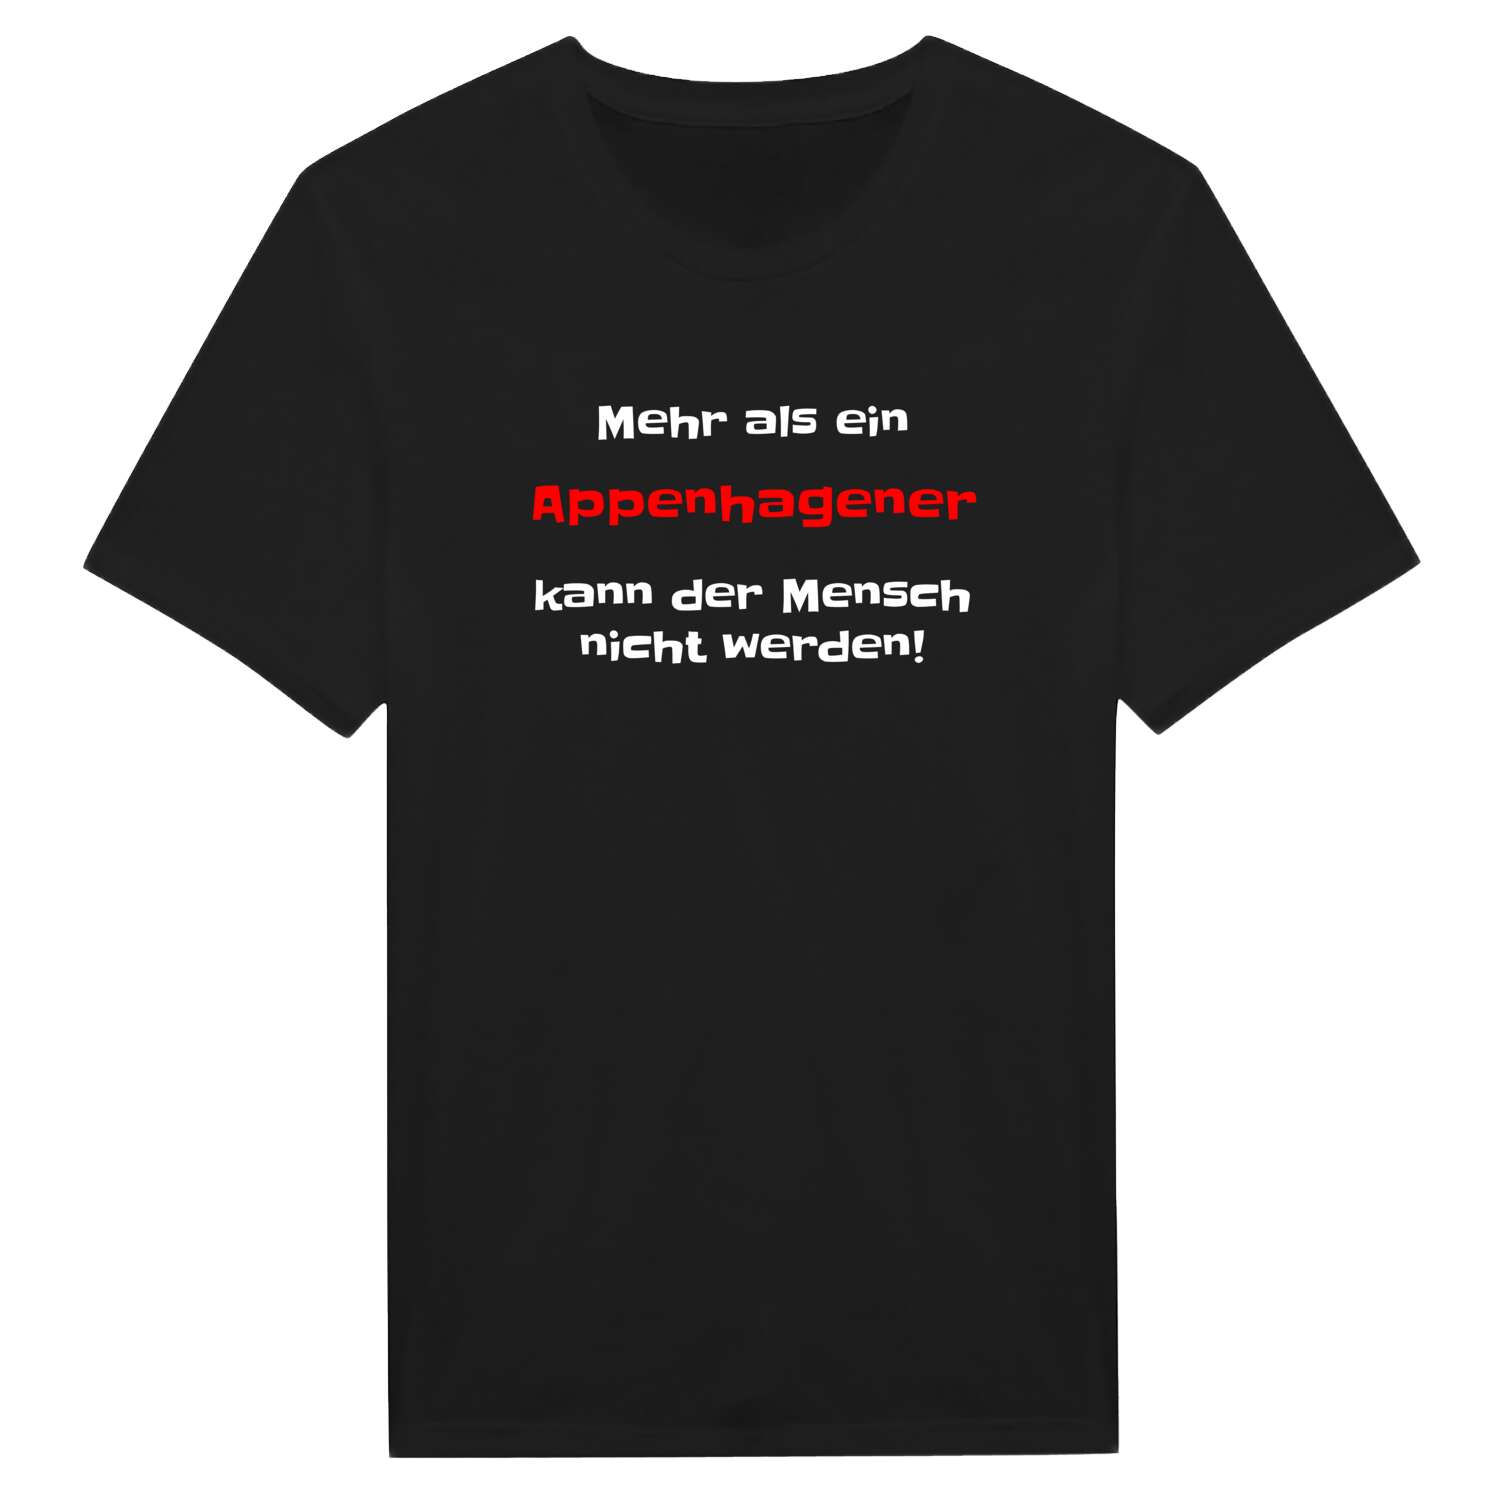 Appenhagen T-Shirt »Mehr als ein«